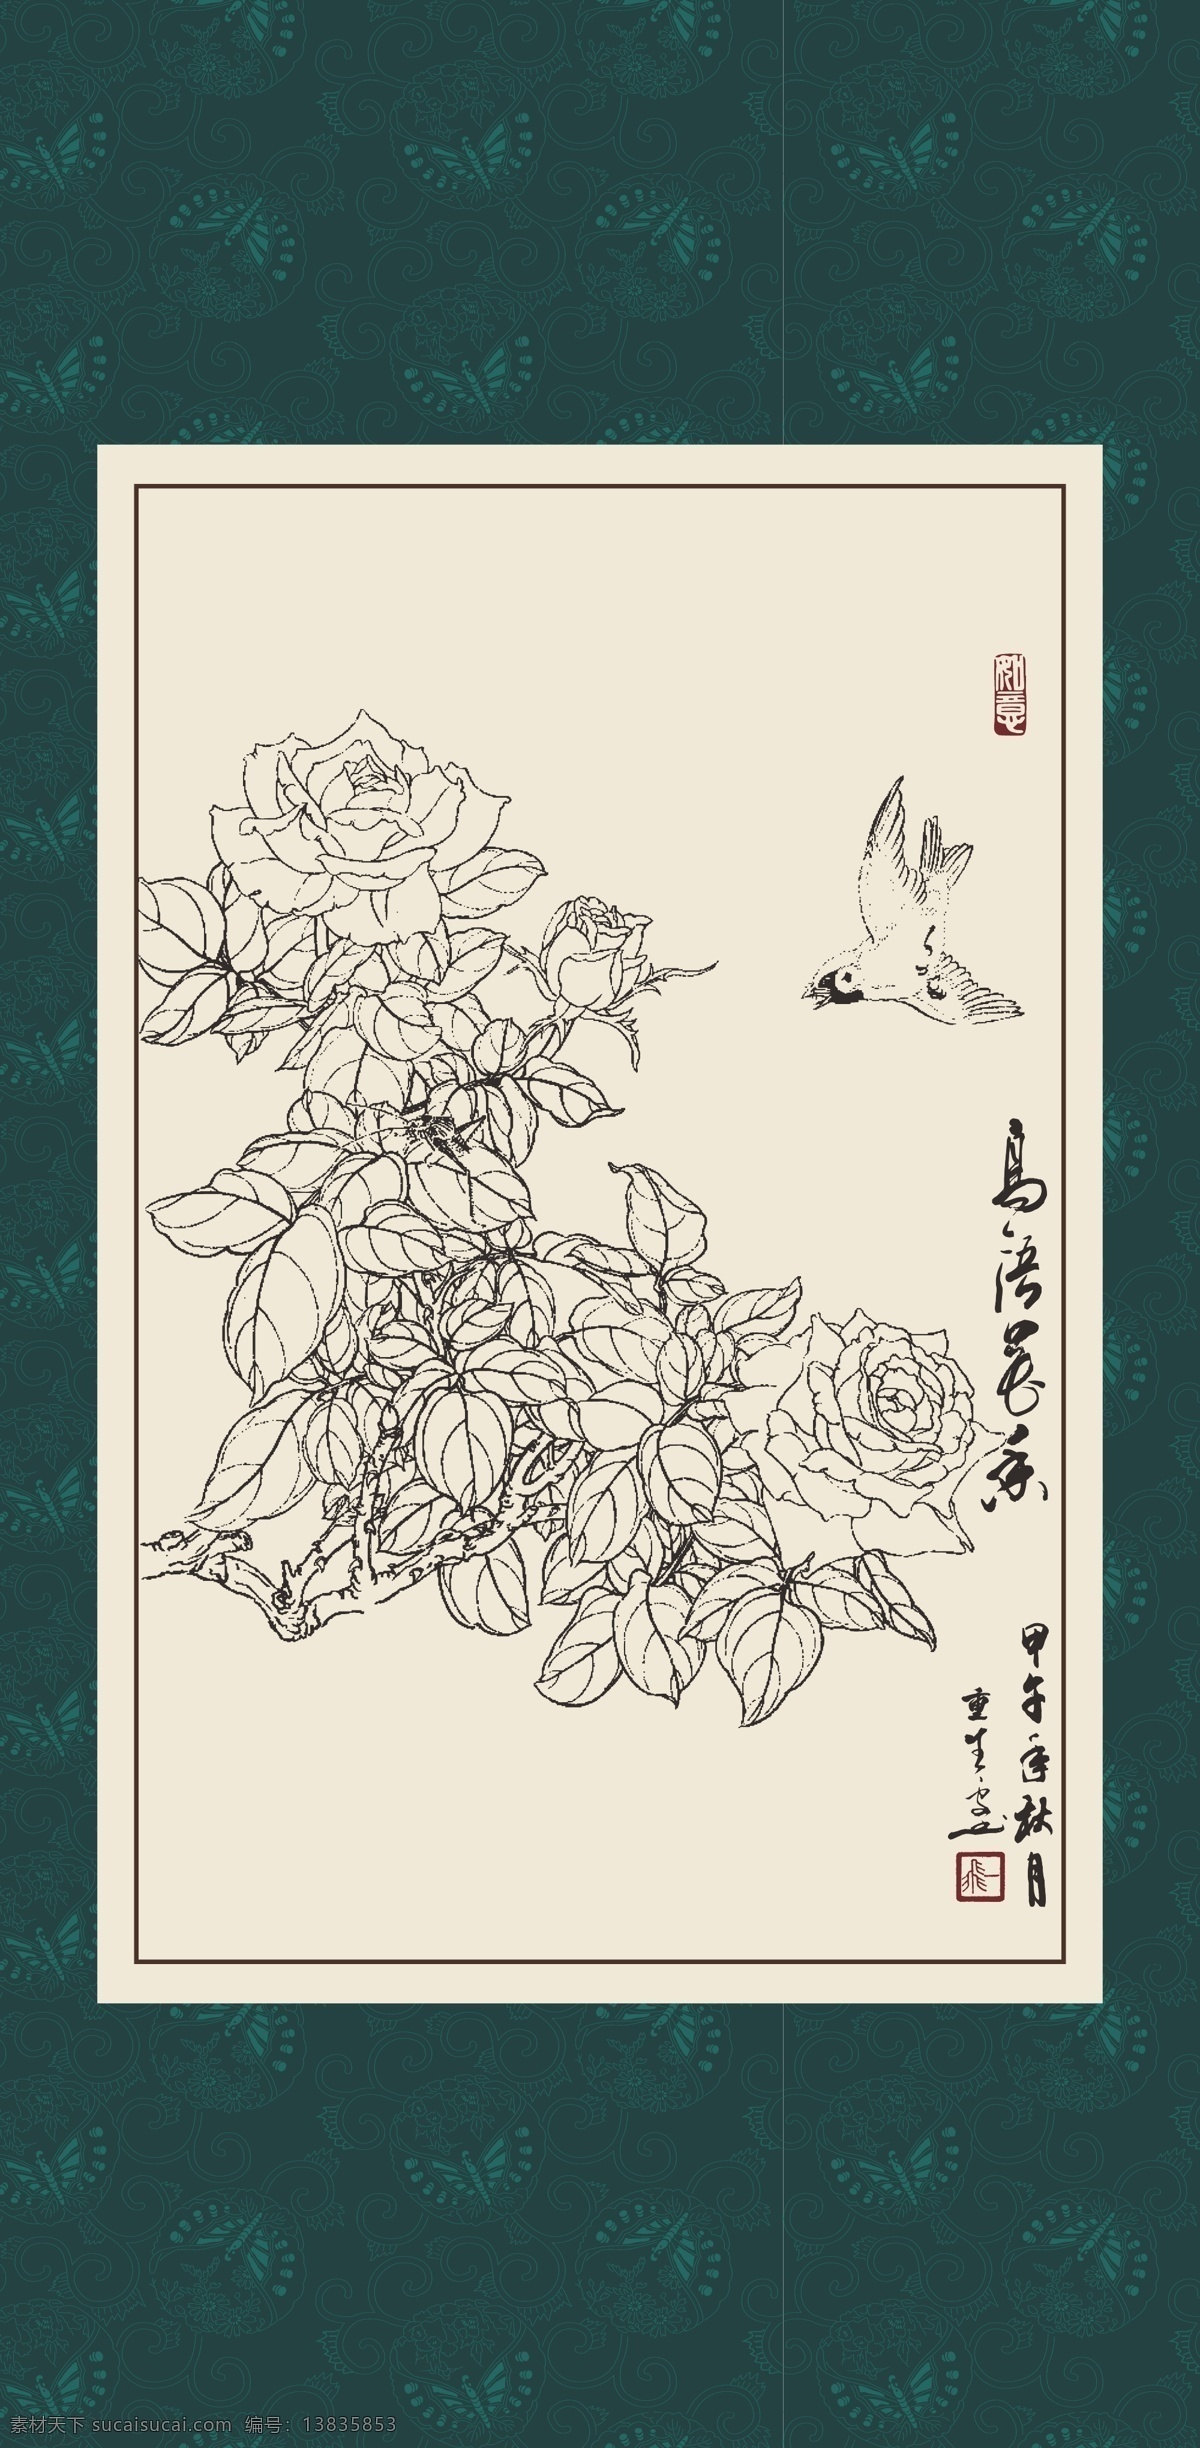 白描 线描 绘画 手绘 国画 印章 书法 花鸟 植物 花卉 工笔 白描月季 玫瑰 文化艺术 绘画书法